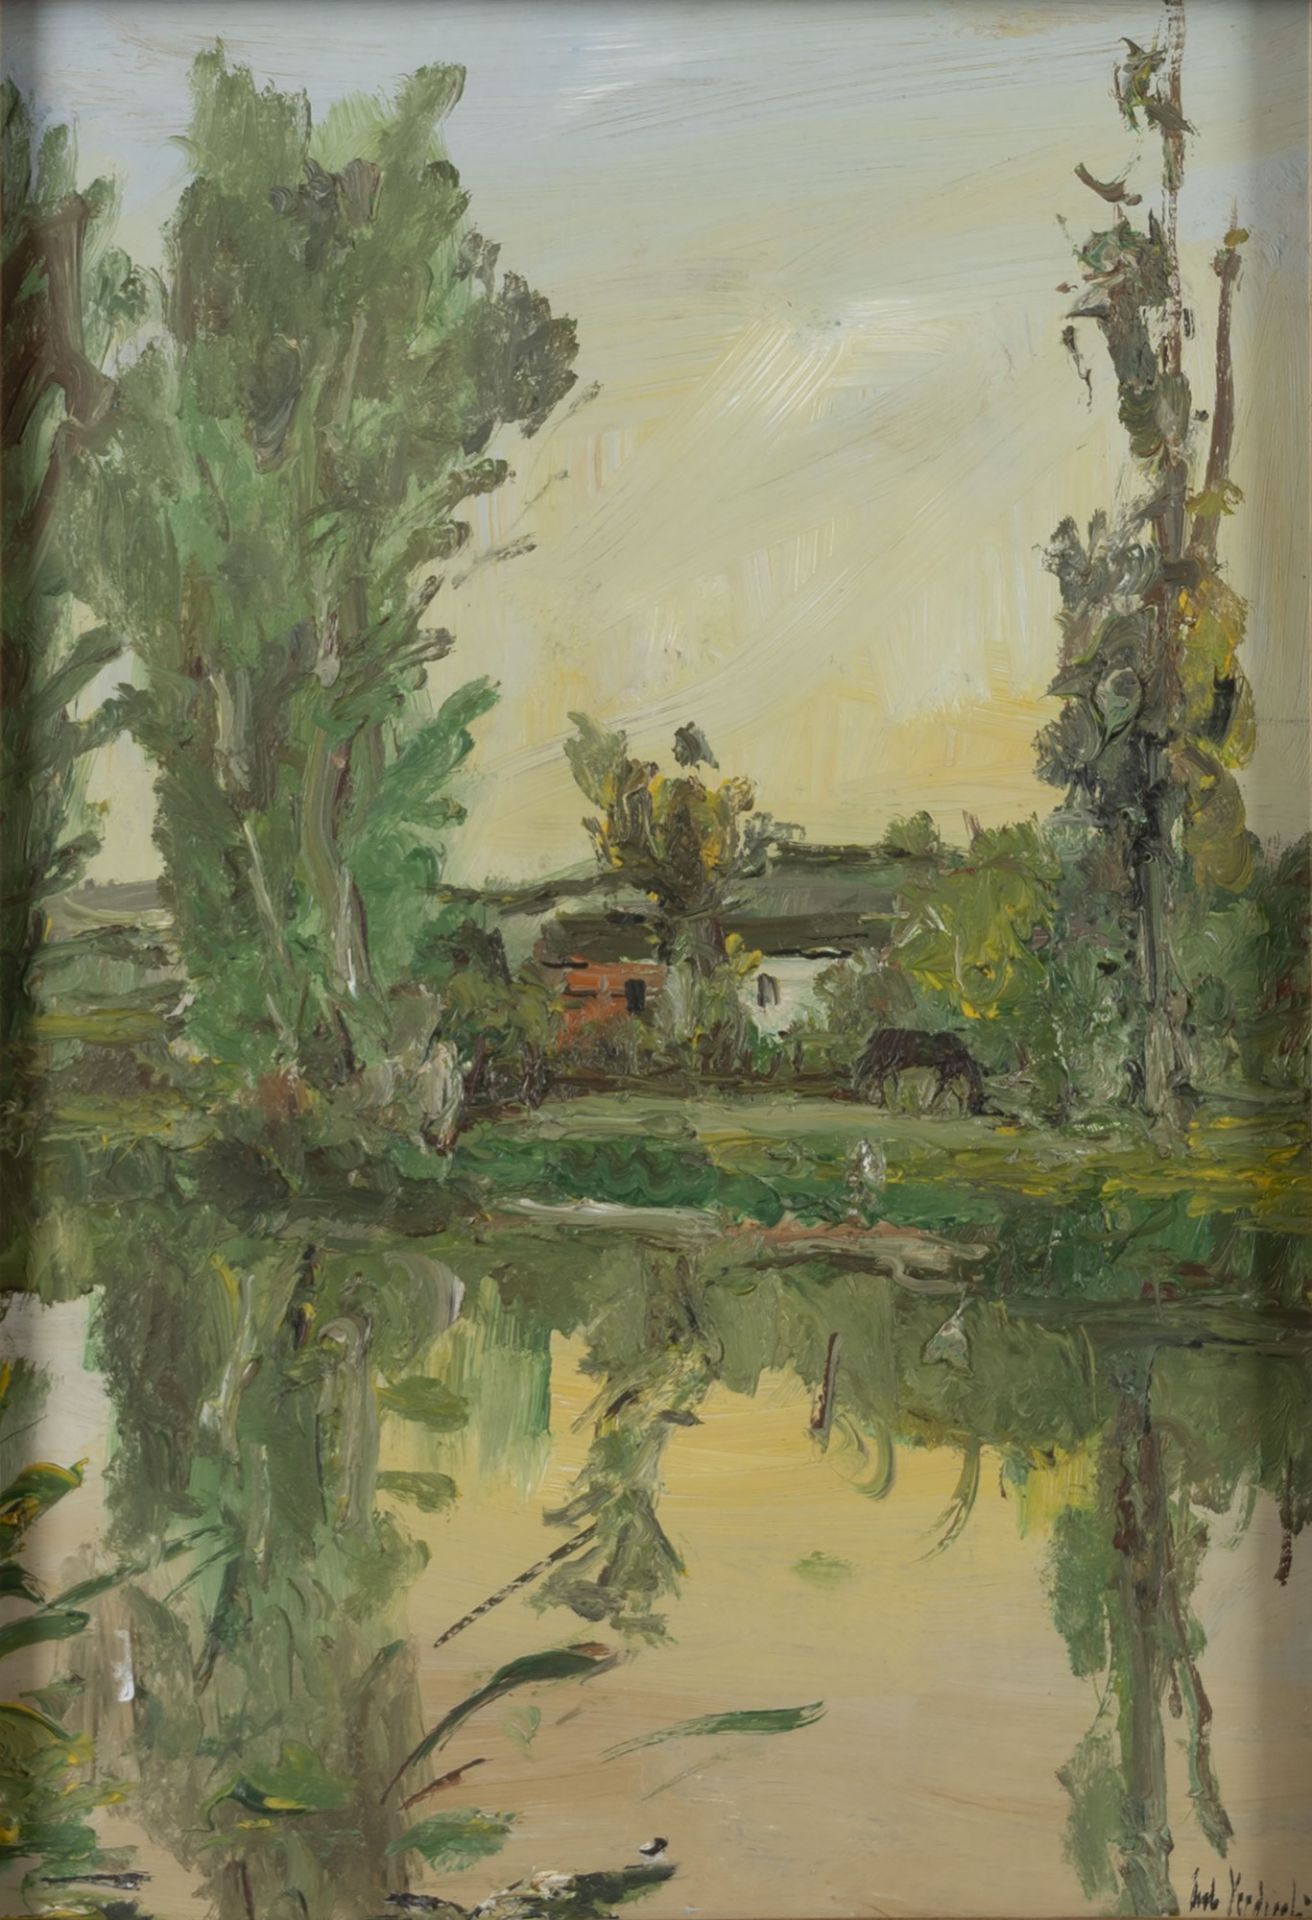 Carlo Verdecchia (Atri 1905-Napoli 1984) - Reflections in a pond